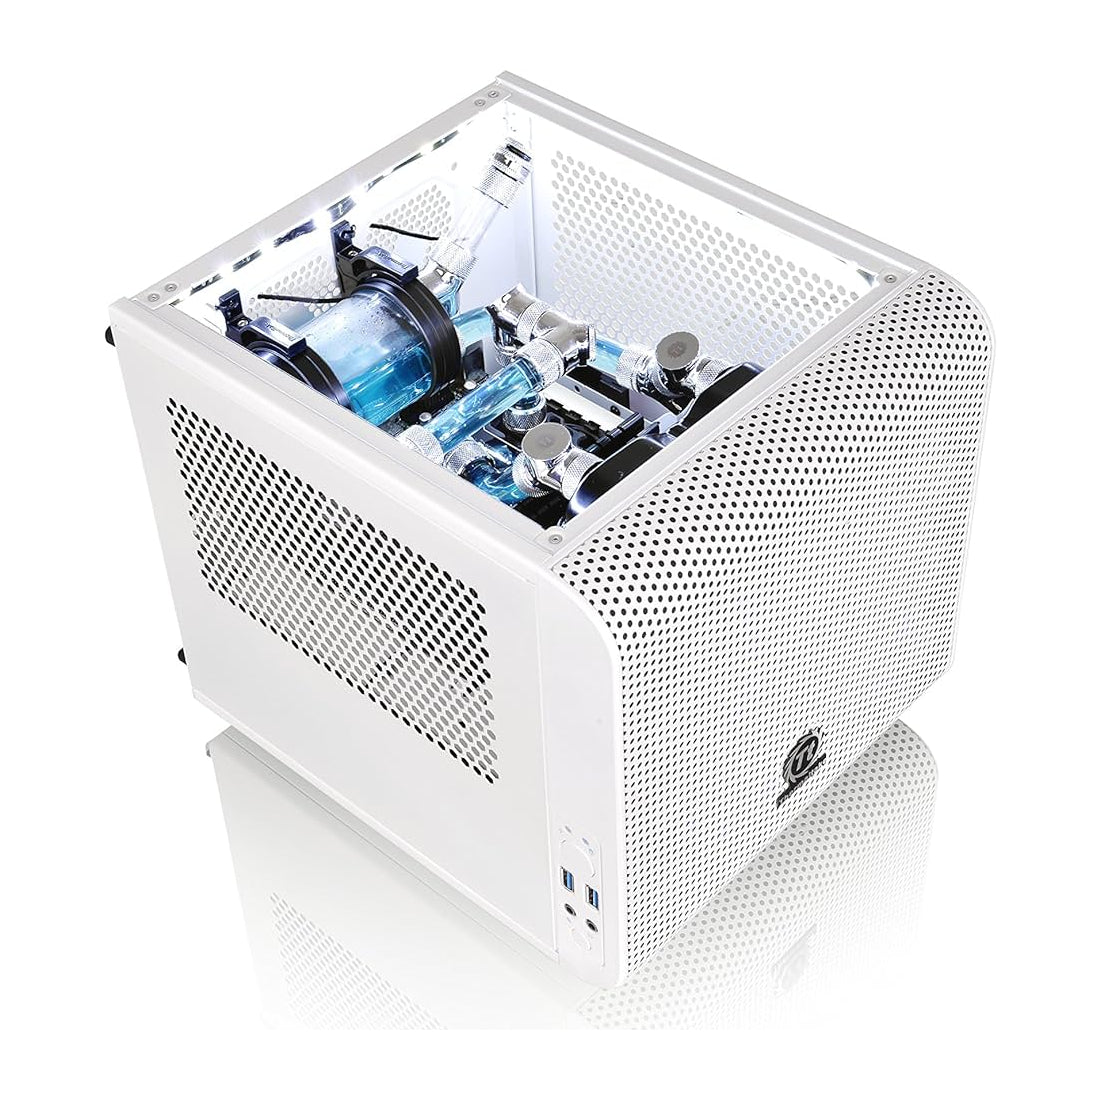 Thermaltake V1 Cube Micro ATX Mini Tower Case - White Edition - صندوق - Store 974 | ستور ٩٧٤